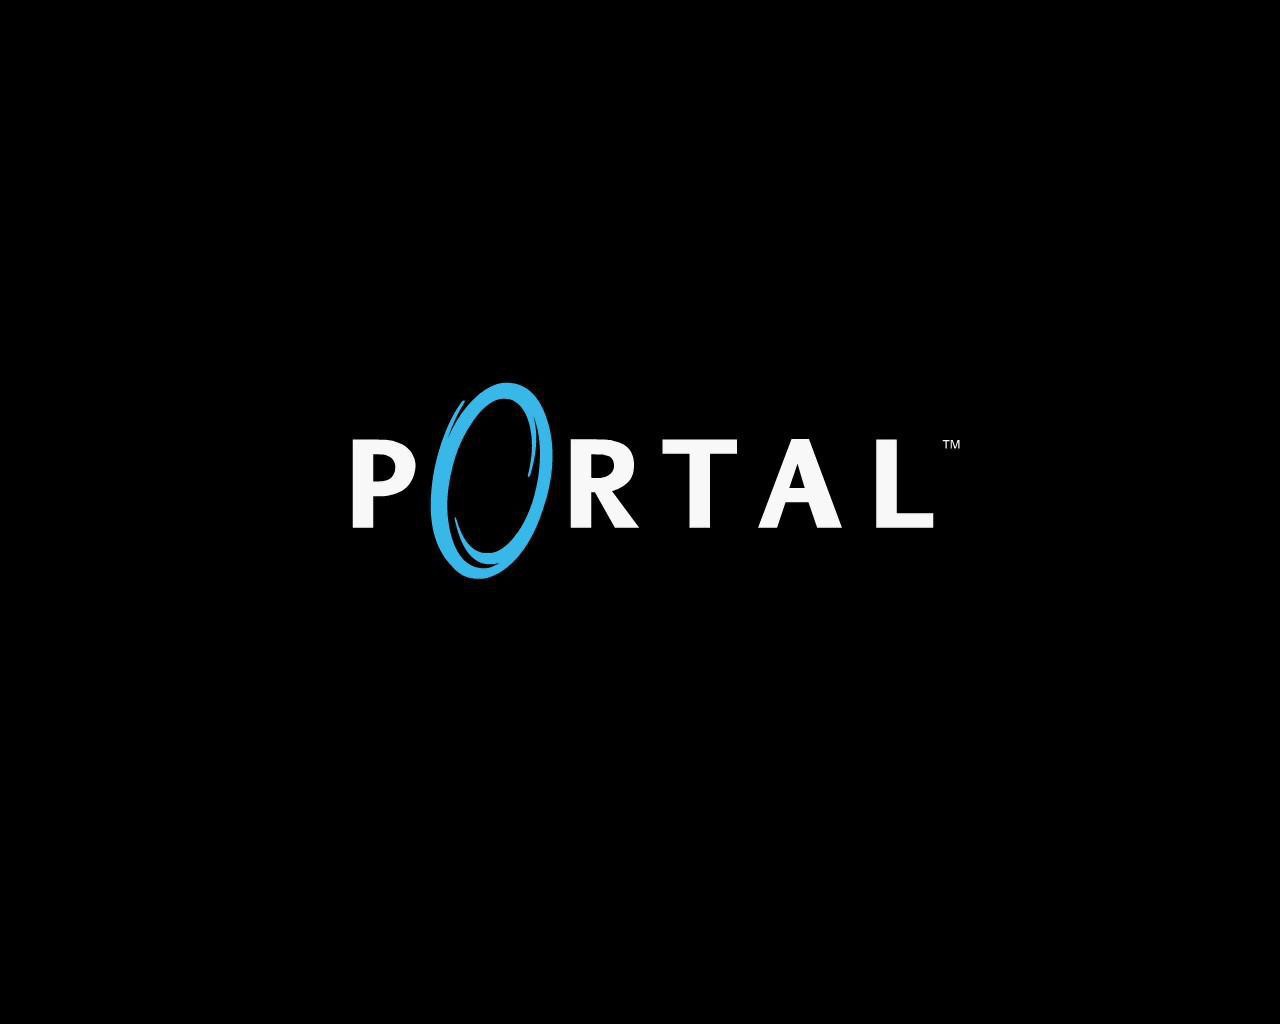 Портал 1 бит. Портал лого. Логотип портал на черном фоне. Portal логотип. Портал 2 логотип.